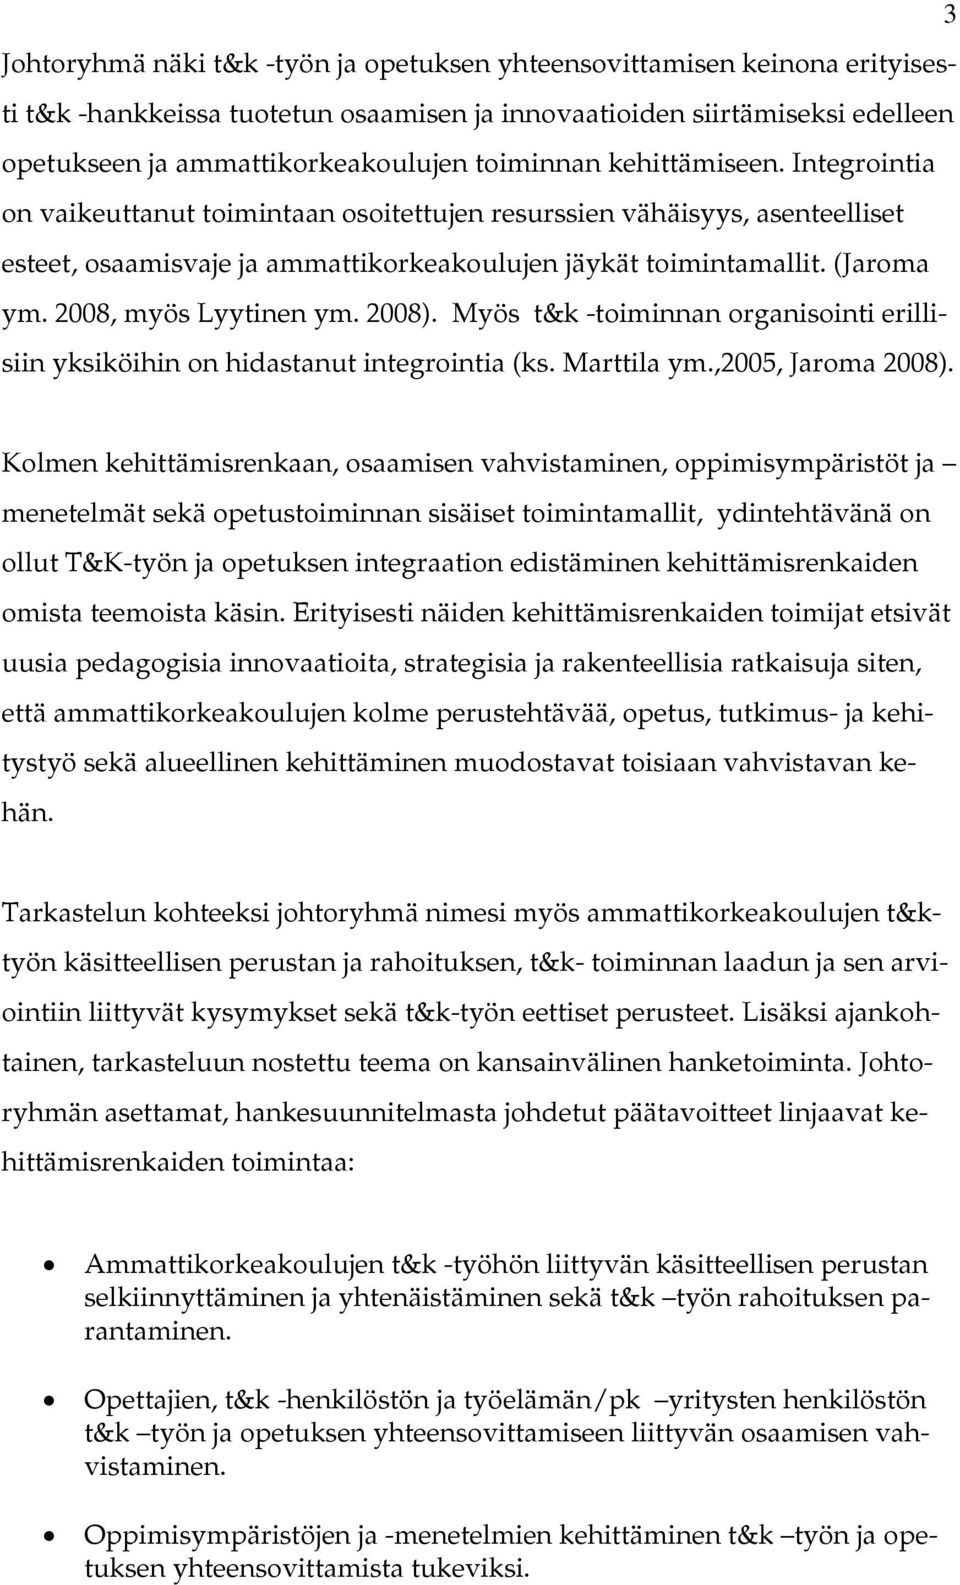 2008, myös Lyytinen ym. 2008). Myös t&k -toiminnan organisointi erillisiin yksiköihin on hidastanut integrointia (ks. Marttila ym.,2005, Jaroma 2008).